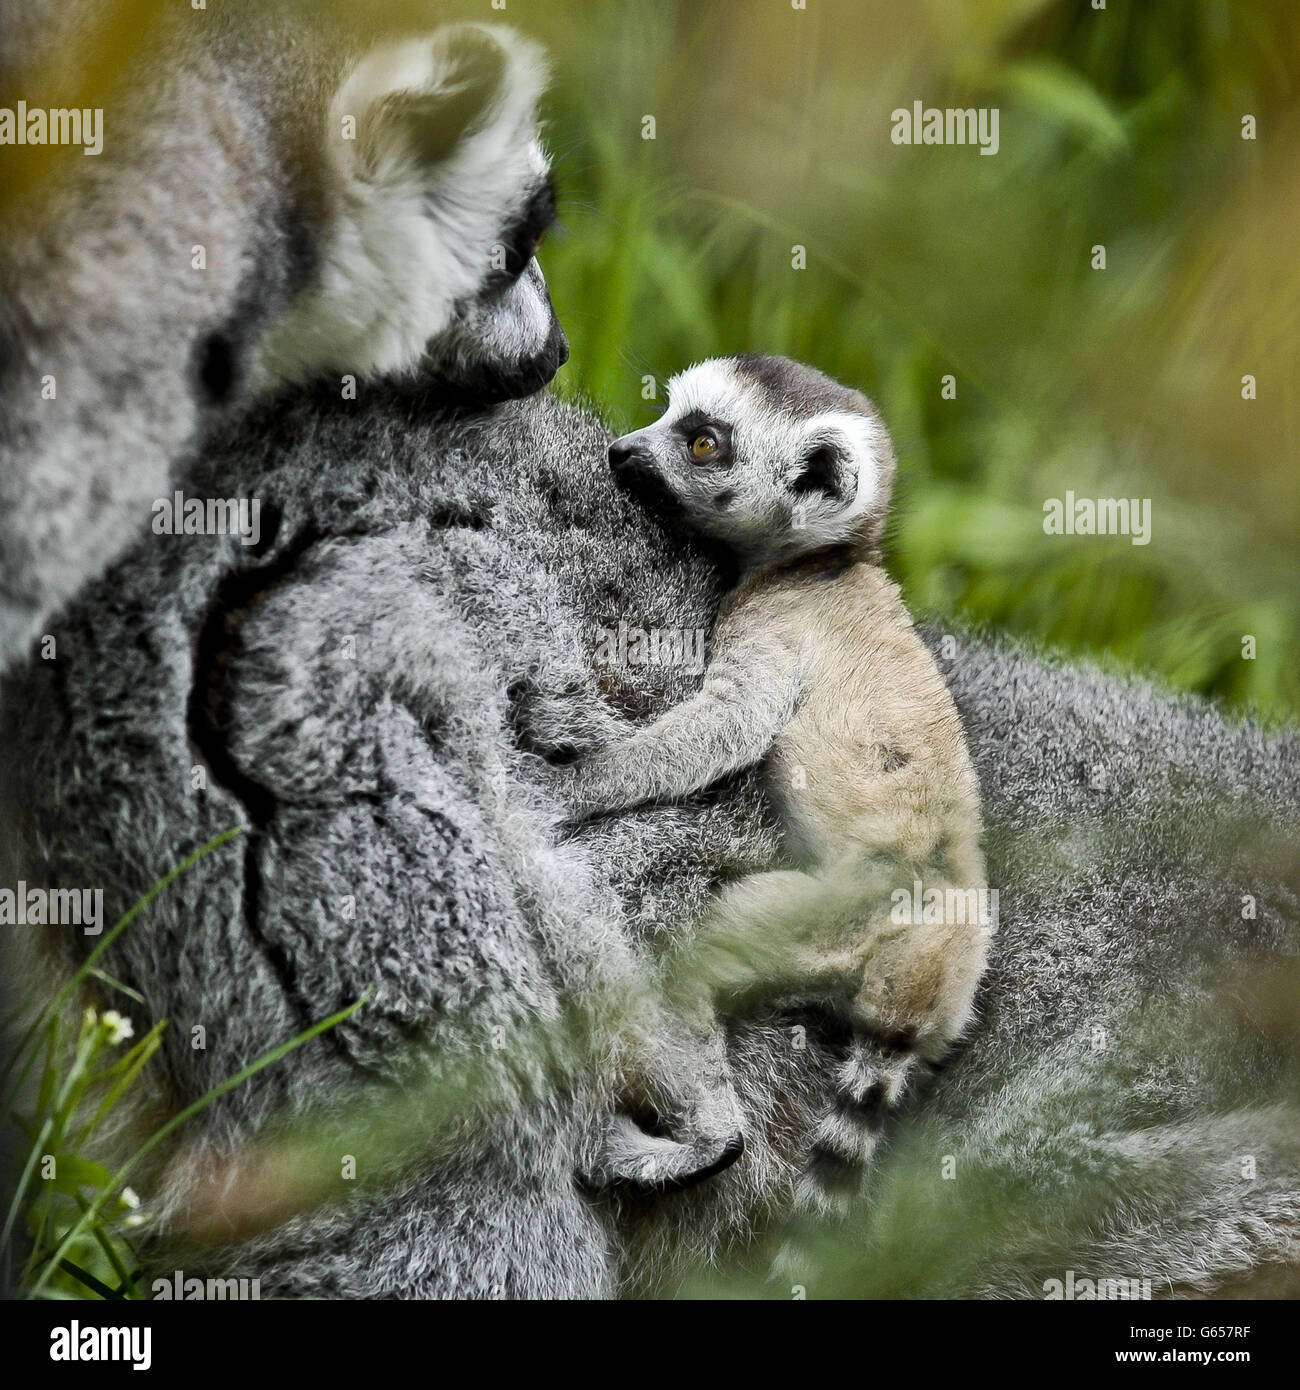 Rascal le lemur à queue annulaire du nouveau-né entre en contact visuel avec le papa Rakota alors que Rascal se fixe sur le dos de la maman Roxy au zoo de Bristol Gardens, où Rascal est le dernier ajout à la famille en plus des sibling Dizzy. Banque D'Images